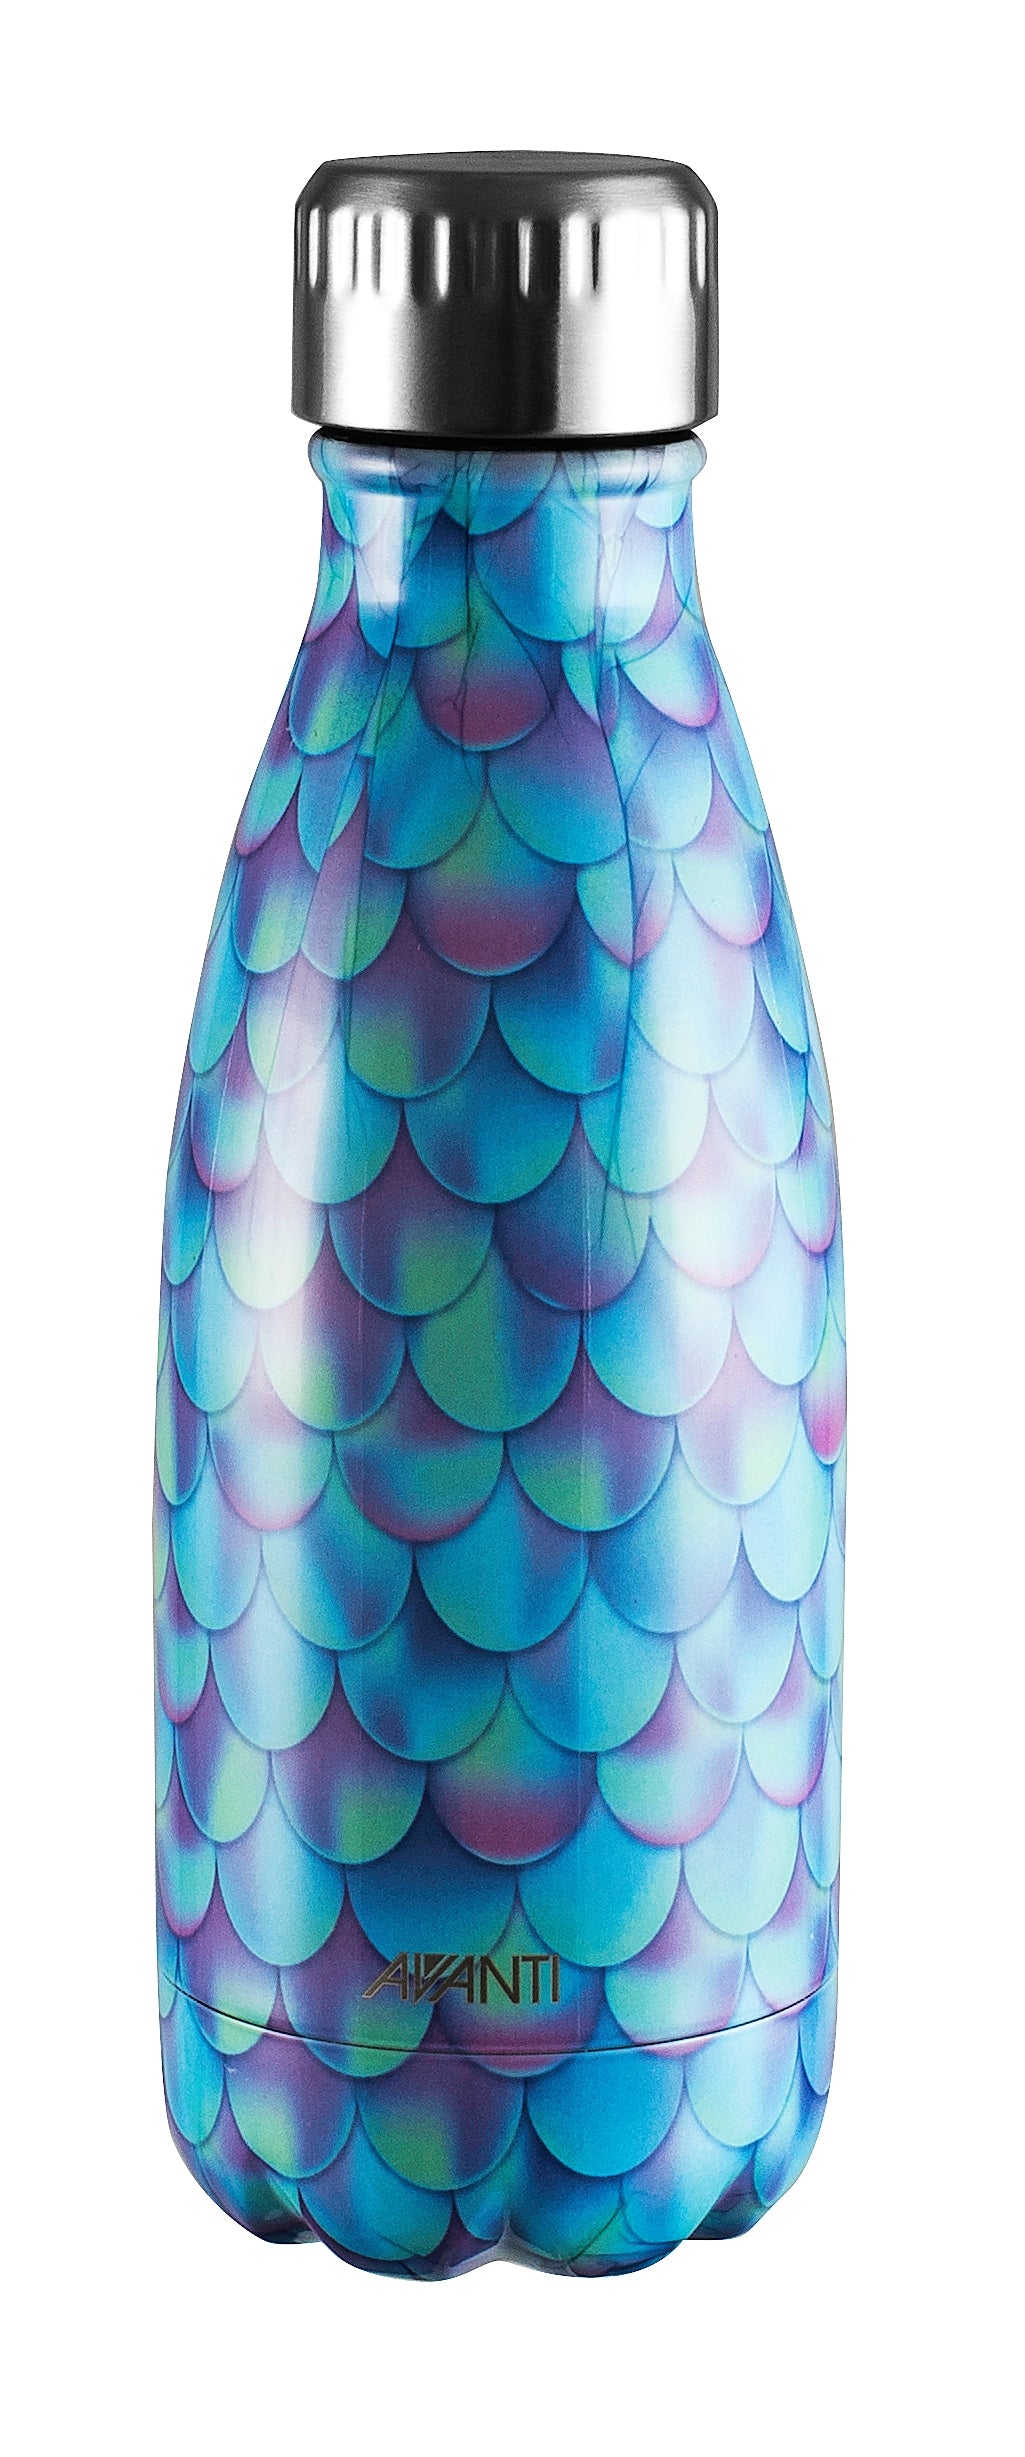 Avanti Fluid Bottle 350ml - Mermaid Tail